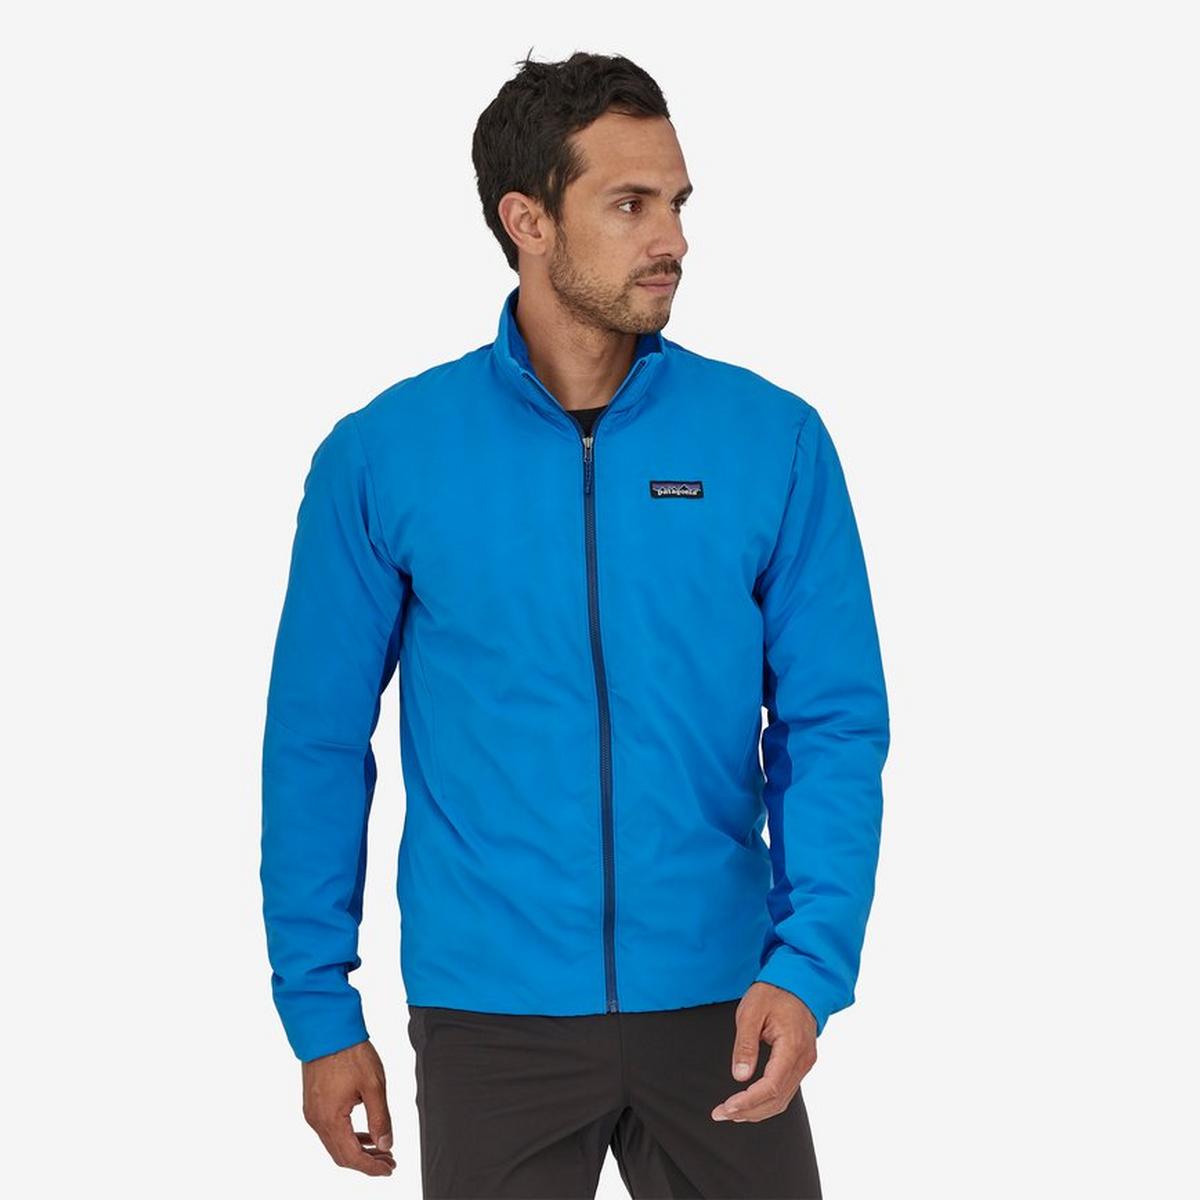 Patagonia Men's Thermal Airshed Jacket - Blue